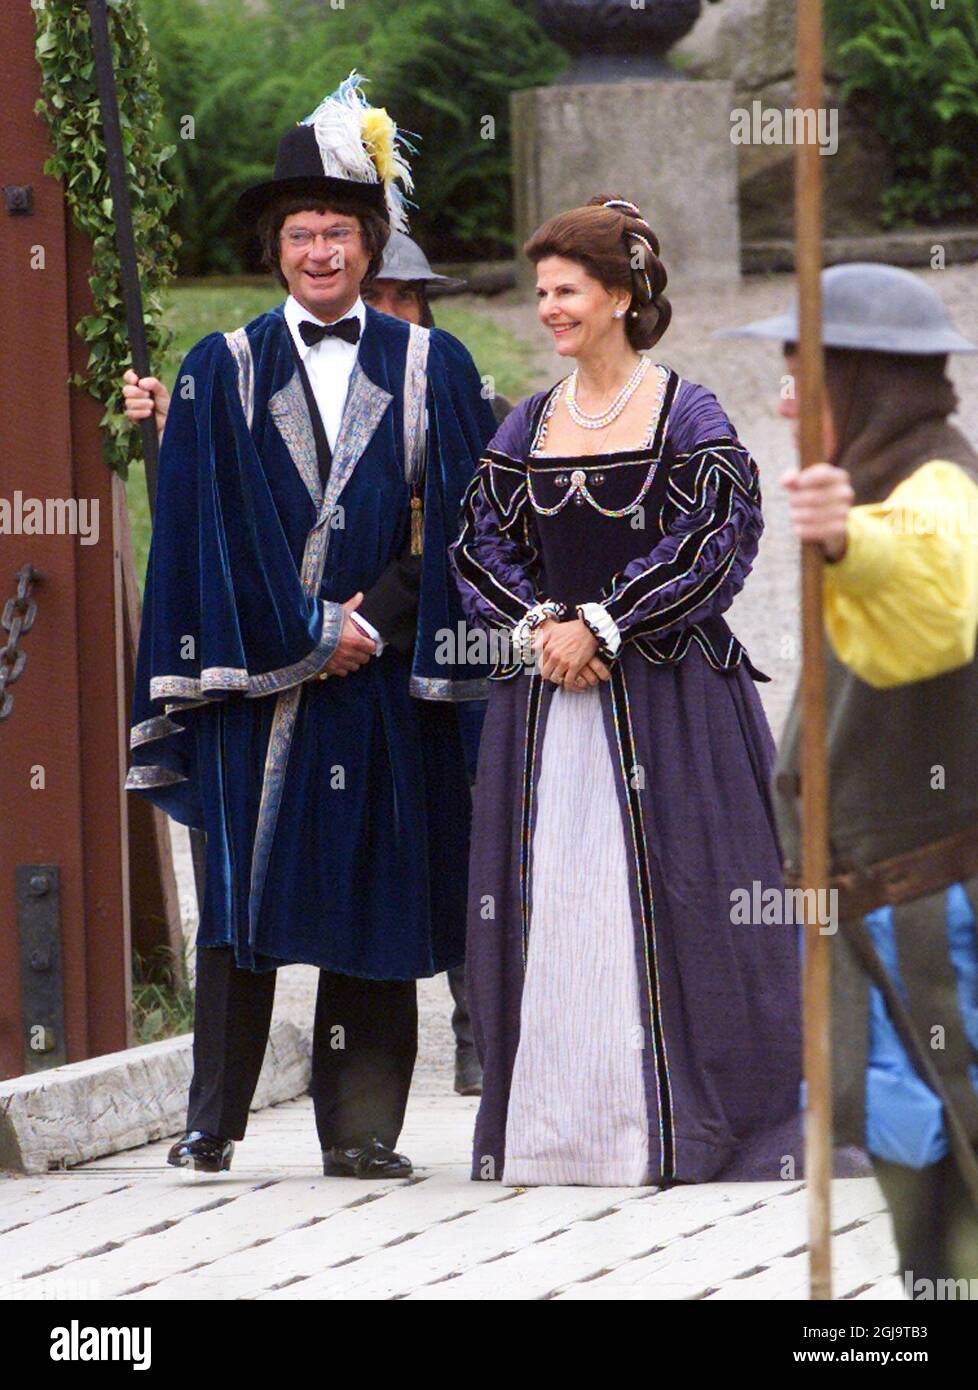 MARIEFRED, SCHWEDEN, 18. JUNI 2001 - das schwedische Königspaar, König Carl Gustaf und Königin Silvia, feiert ihr 25-jähriges Jubiläum - eine Silberhochzeit - mit zwei Tagen Partys und Aktivitäten in Palästen rund um Stockholm vom 18. Bis 19. Juni. Alle europäischen Könige sind eingeladen, und die meisten, darunter Prinz Karl von Großbritannien, Prinz Albert von Monaco und Königin Margrethe von Dänemark, nahmen daran Teil. Die königlichen Aktivitäten am Montag, den 18. Juni, beinhalteten einen Besuch mit dem Boot in der wikingerstadt Birka auf der Insel Bjorko außerhalb Stockholms und ein Theaterstück im Schloss Gripsholm in Mariefred. Foto: Henrik Montgomery PB-Kod: Stockfoto